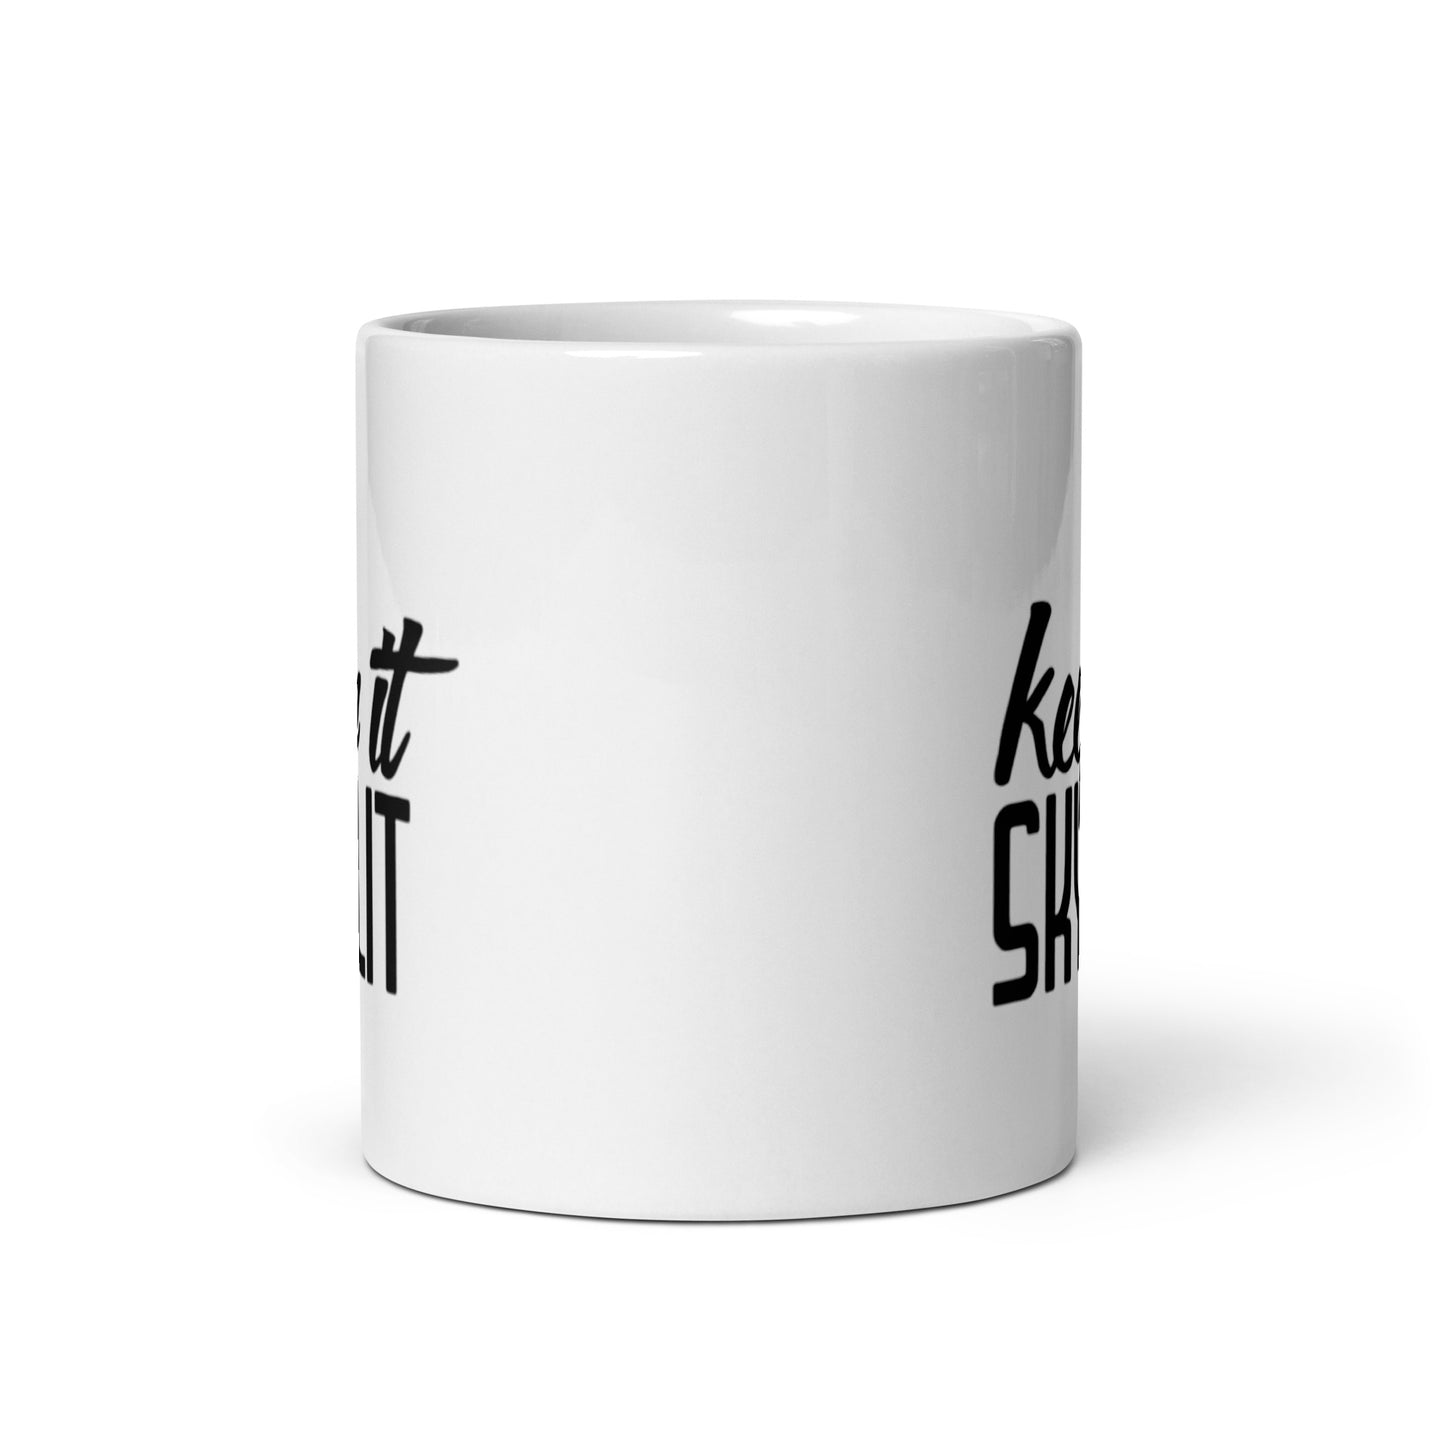 Keep it Skylit coffee mug